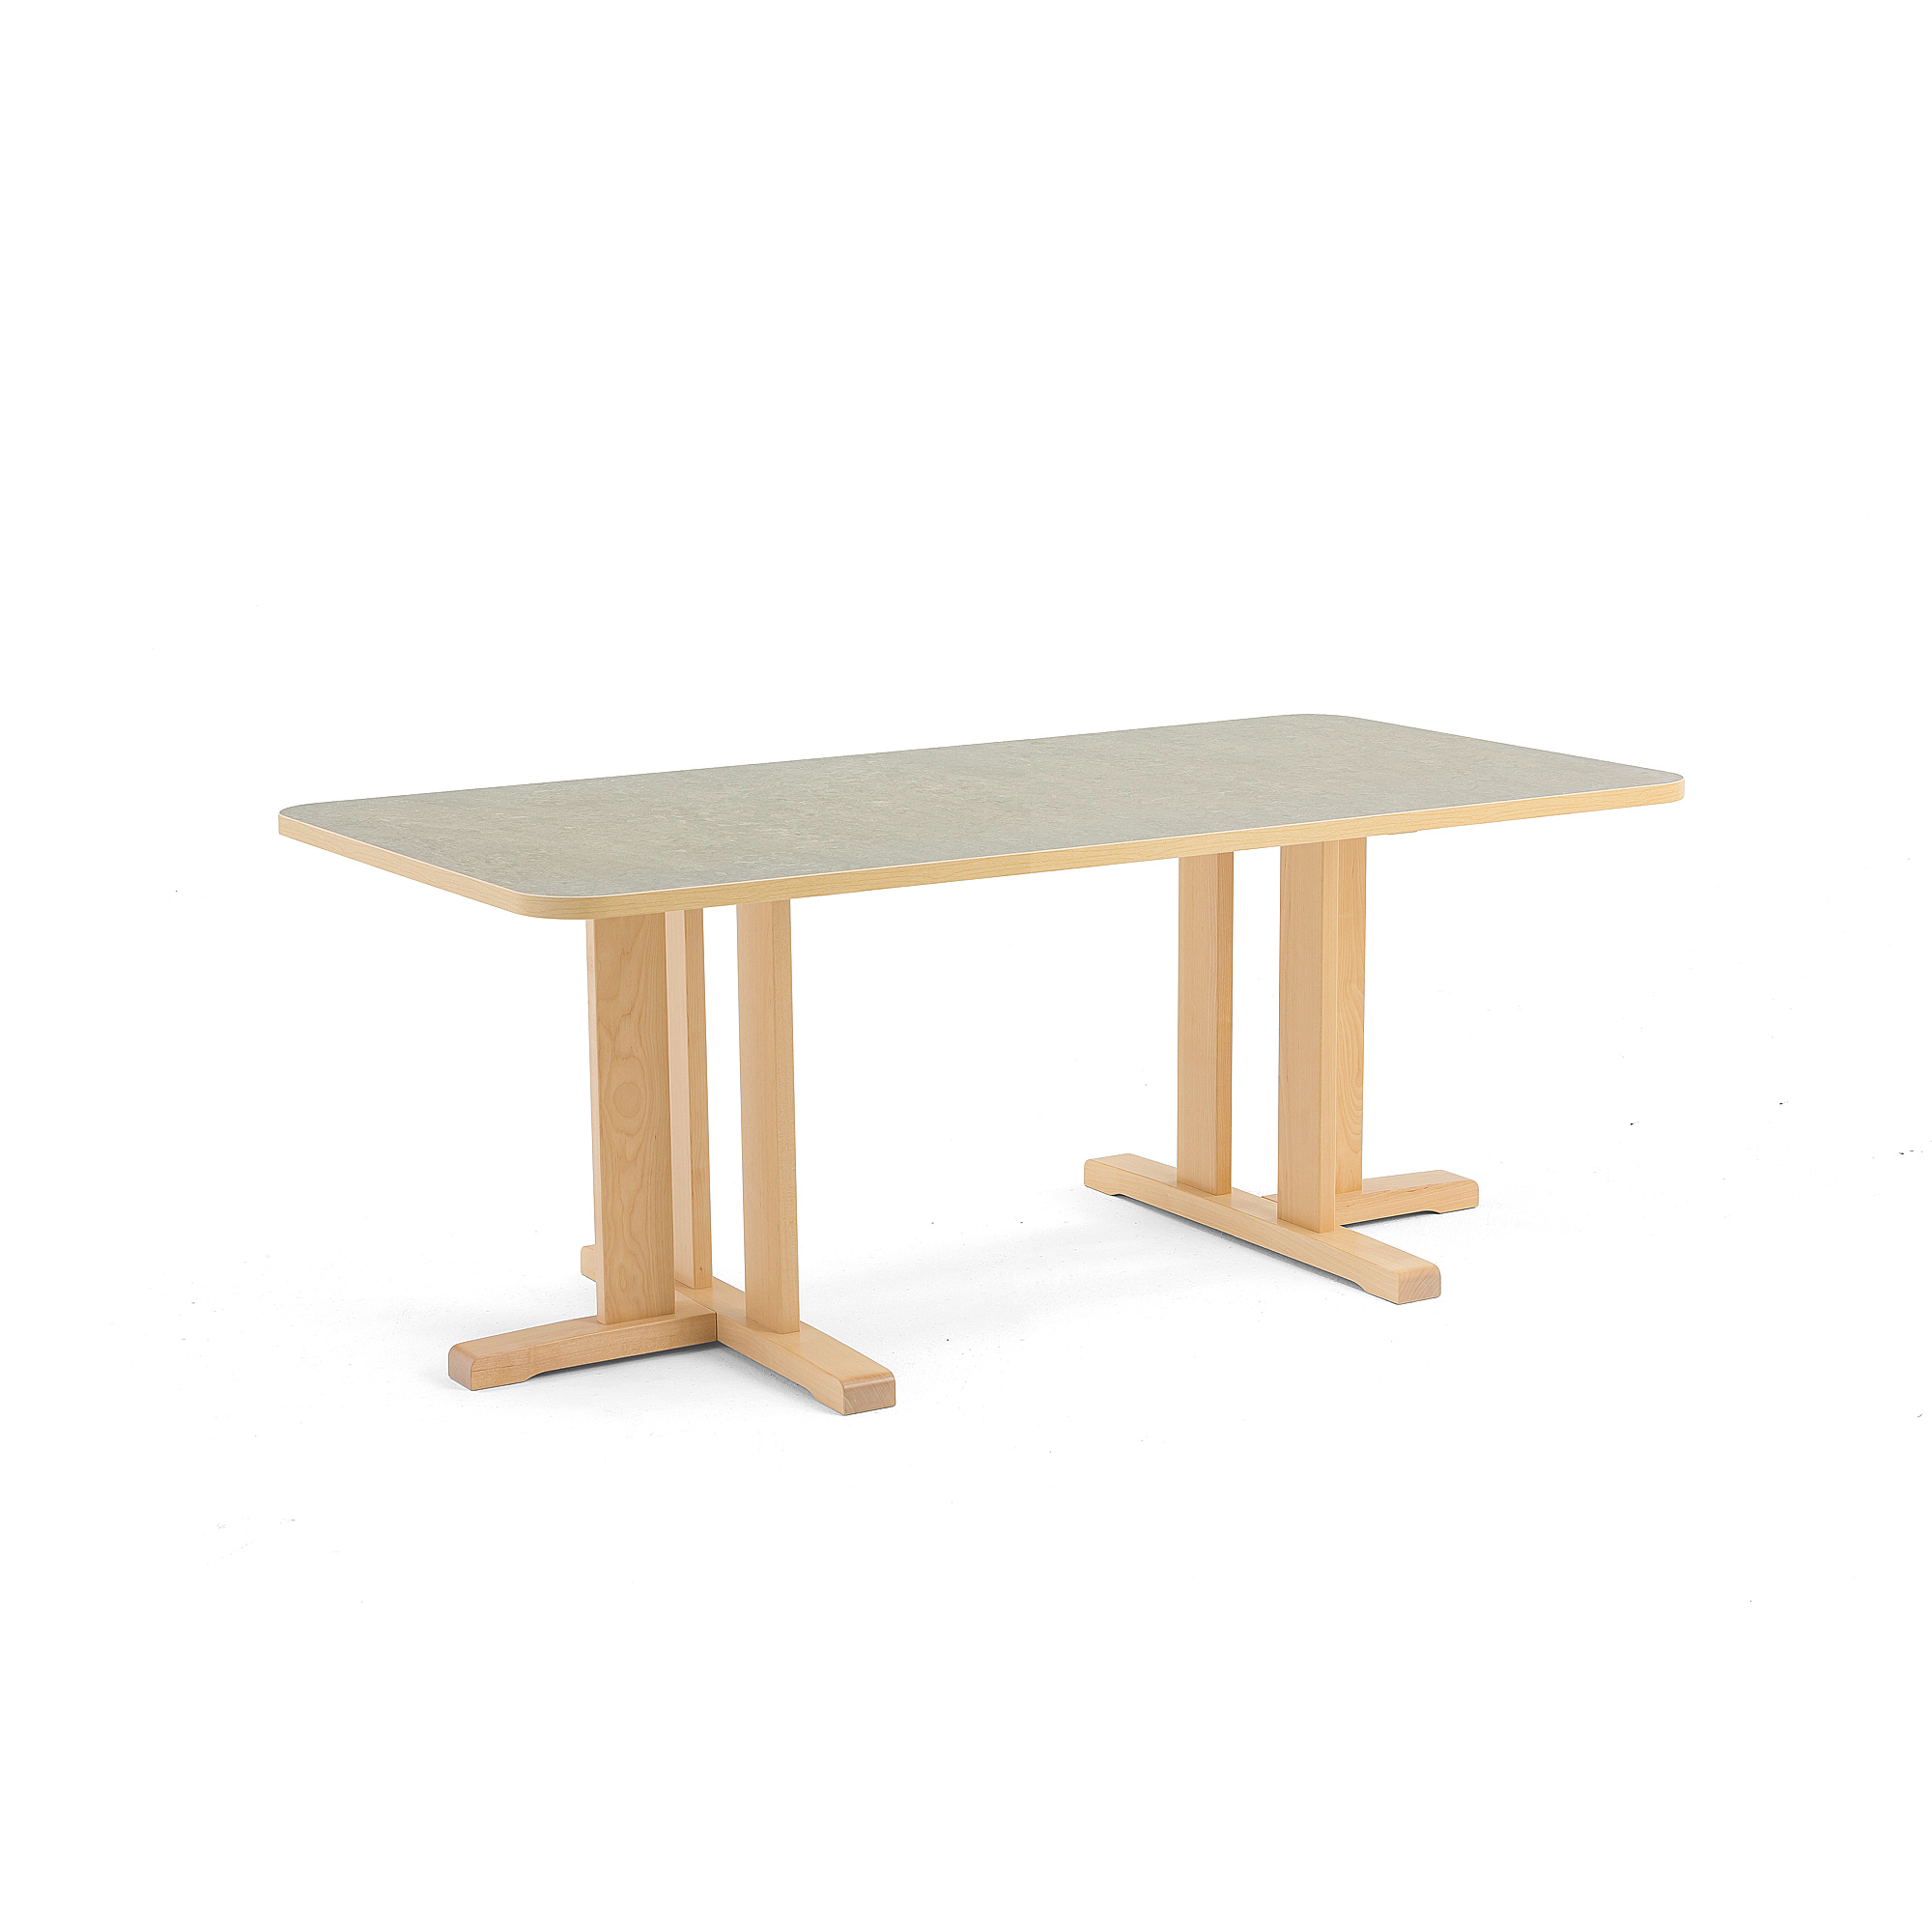 Stůl KUPOL, 1600x800x600 mm, obdélník, akustické linoleum, bříza/šedá